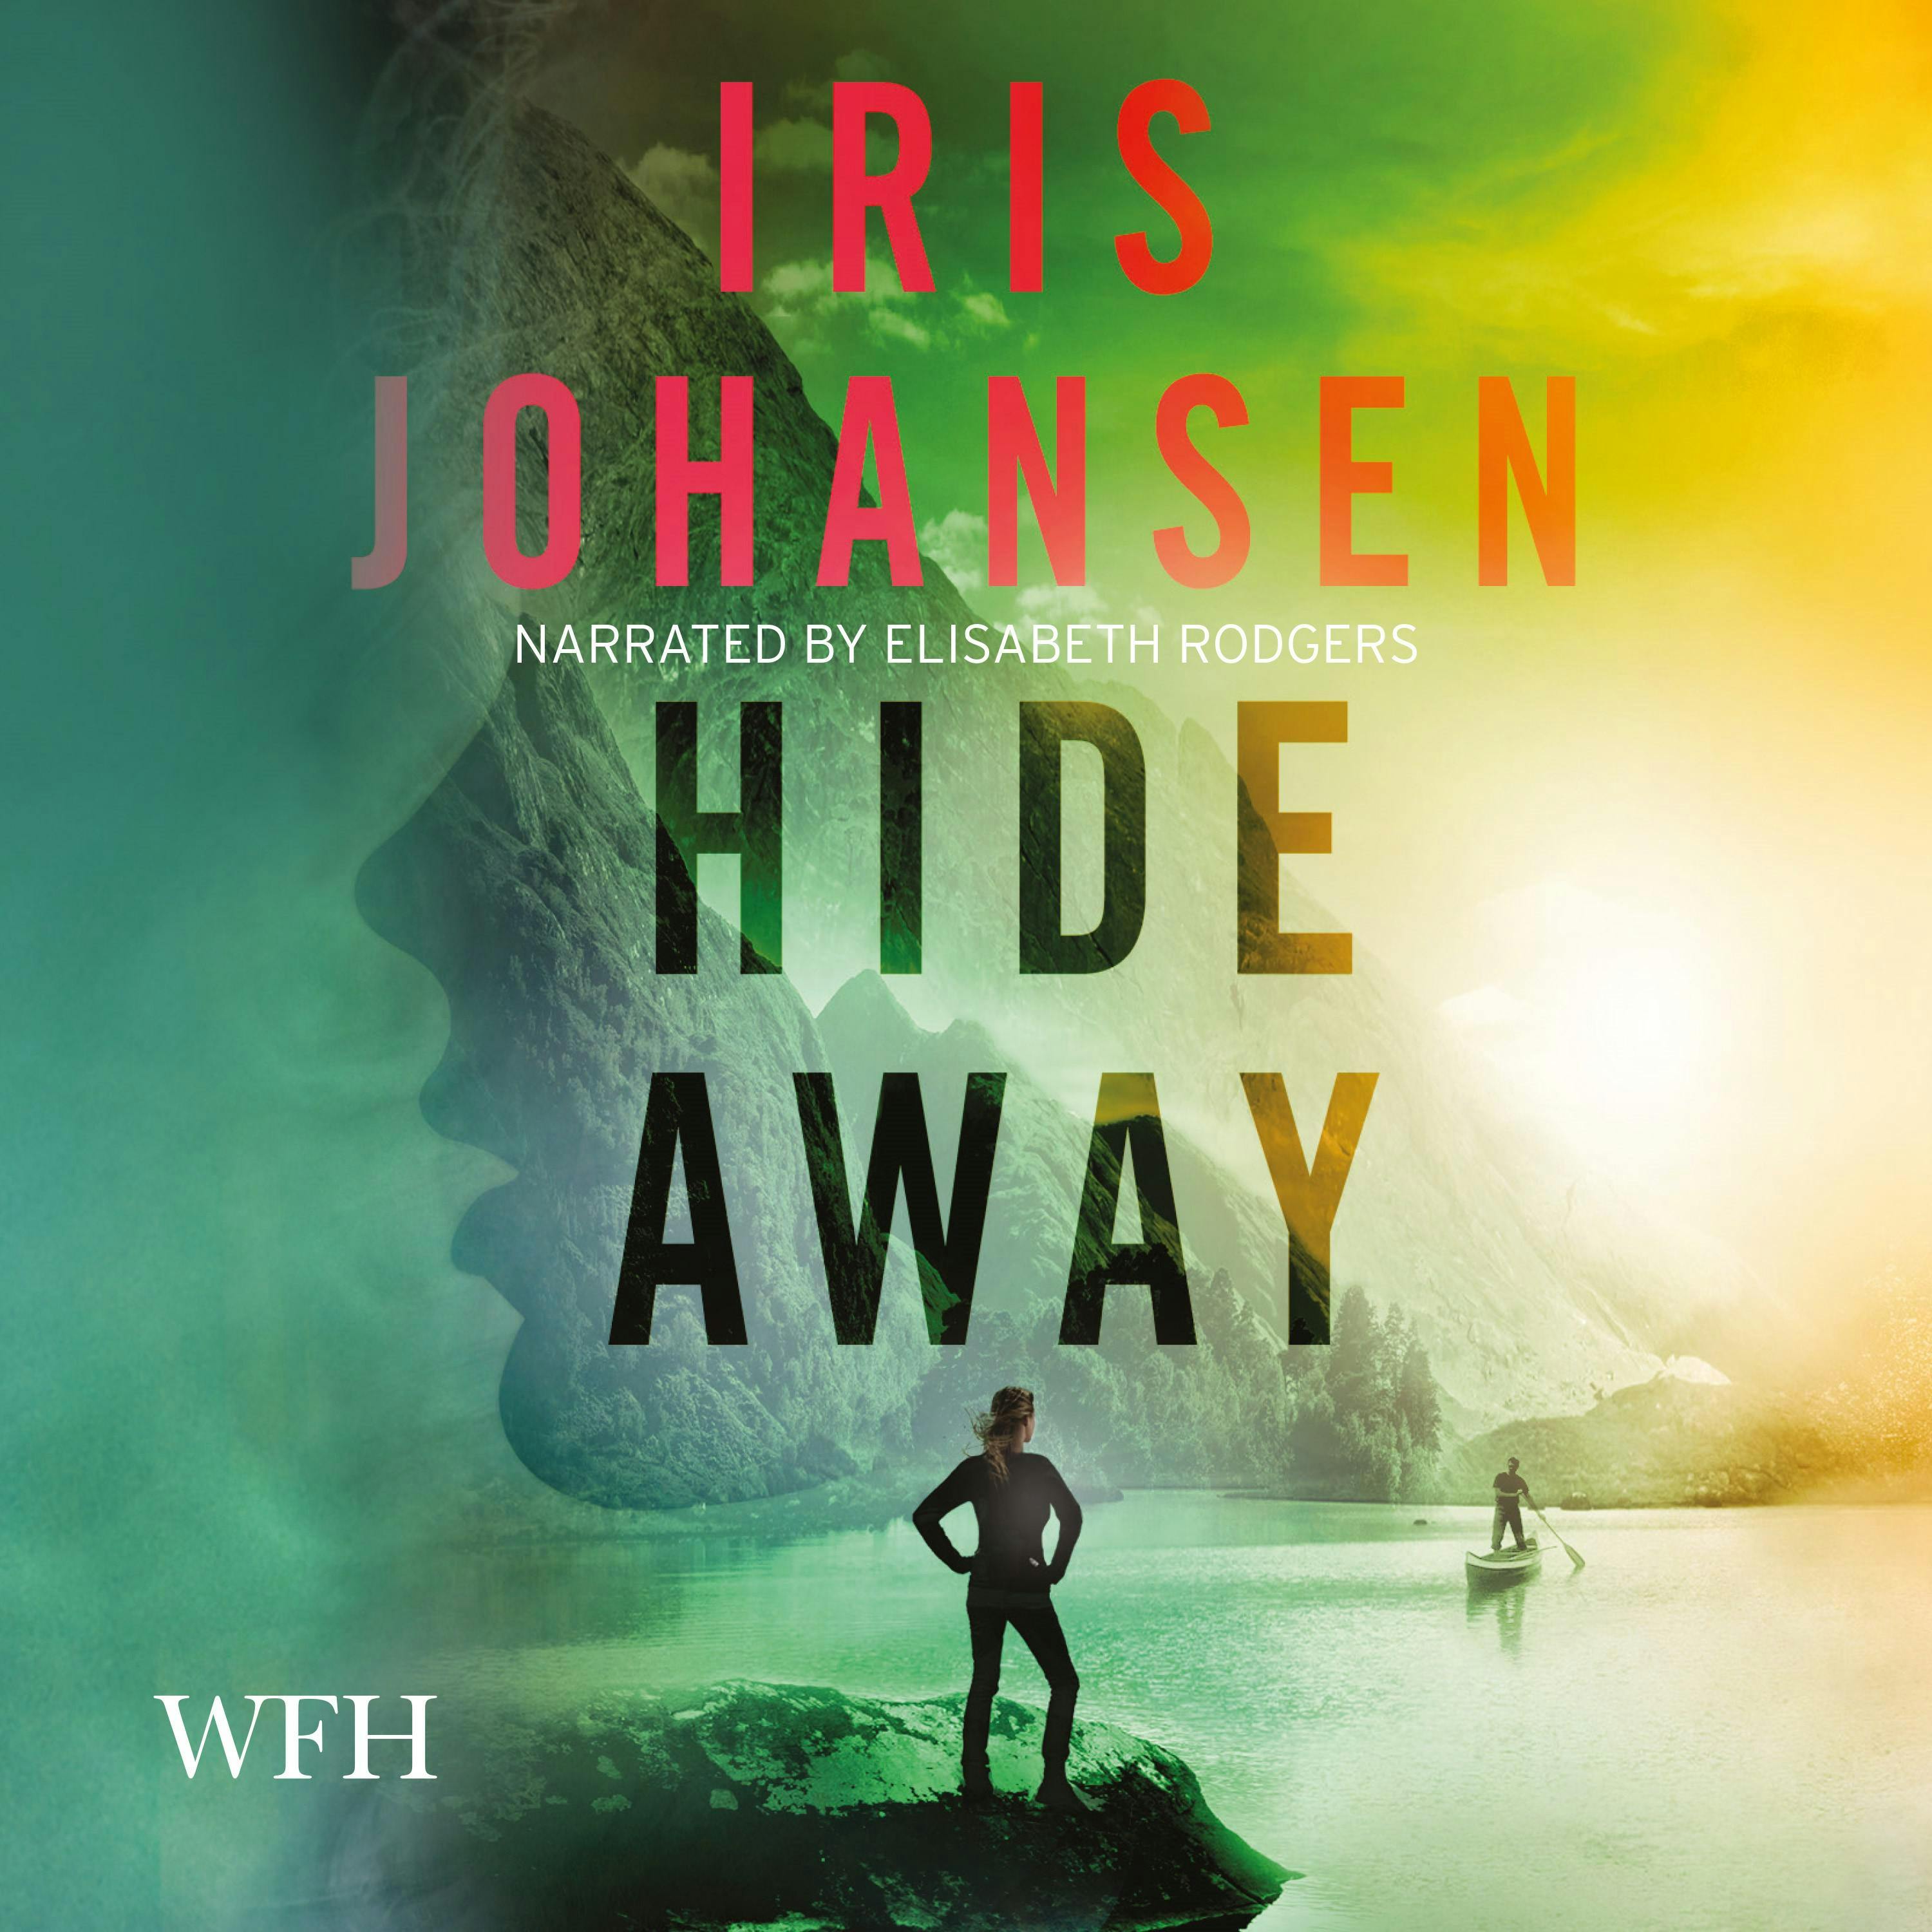 Hide Away - Iris Johansen